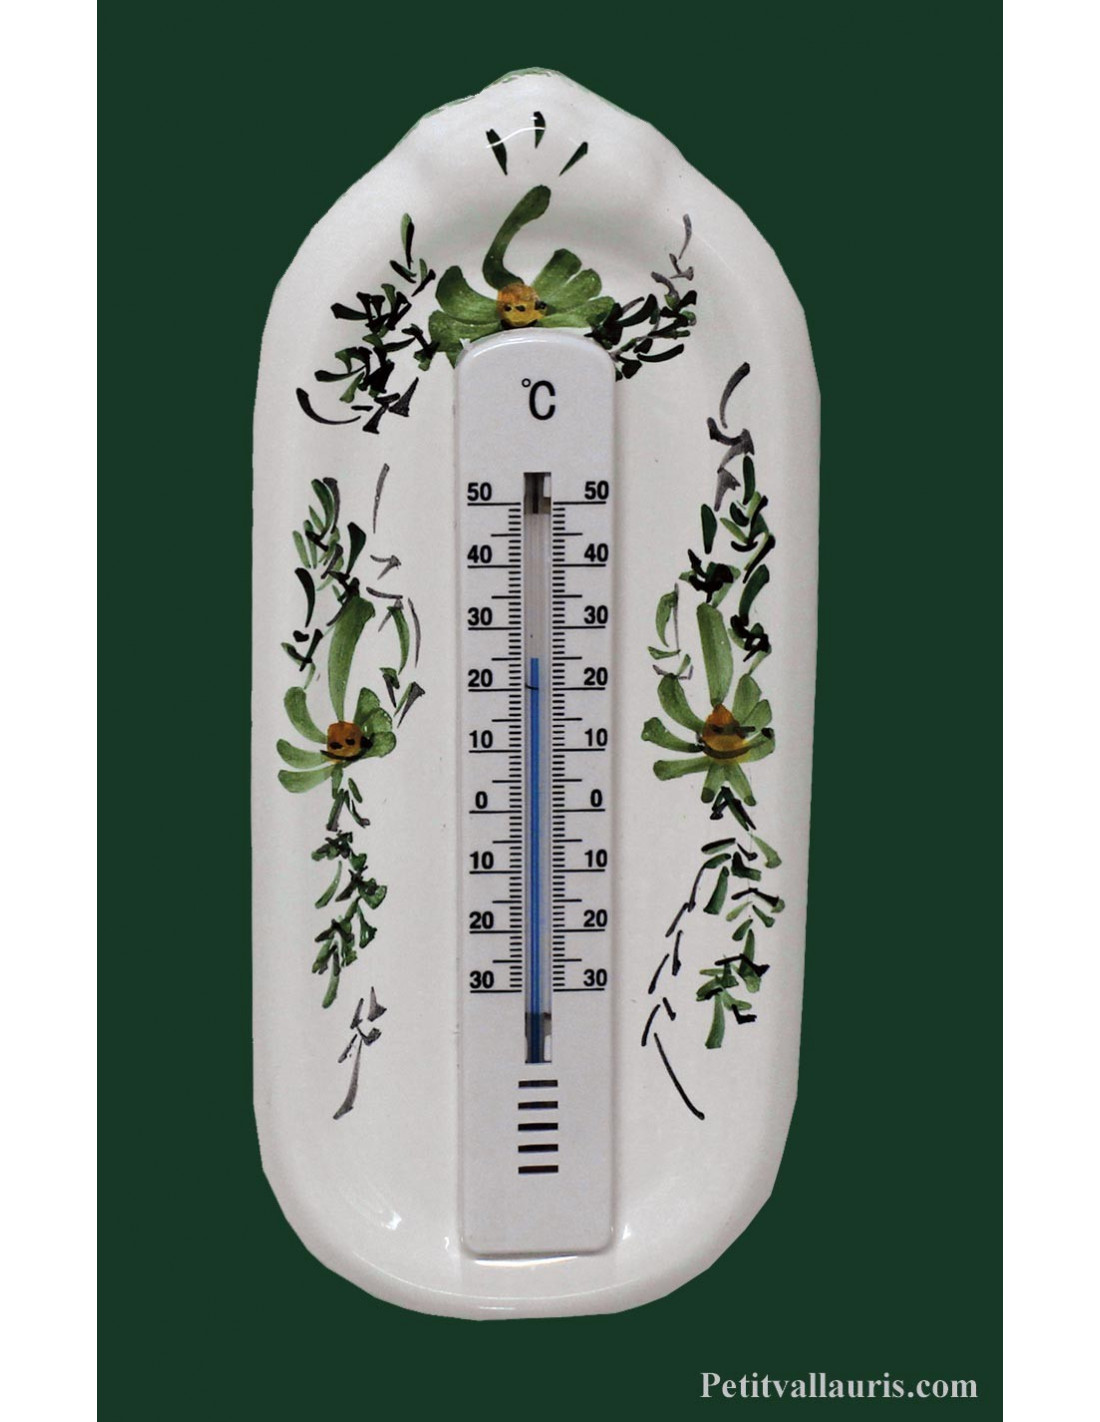 Thermomètre Intérieur Décoratif Blanc